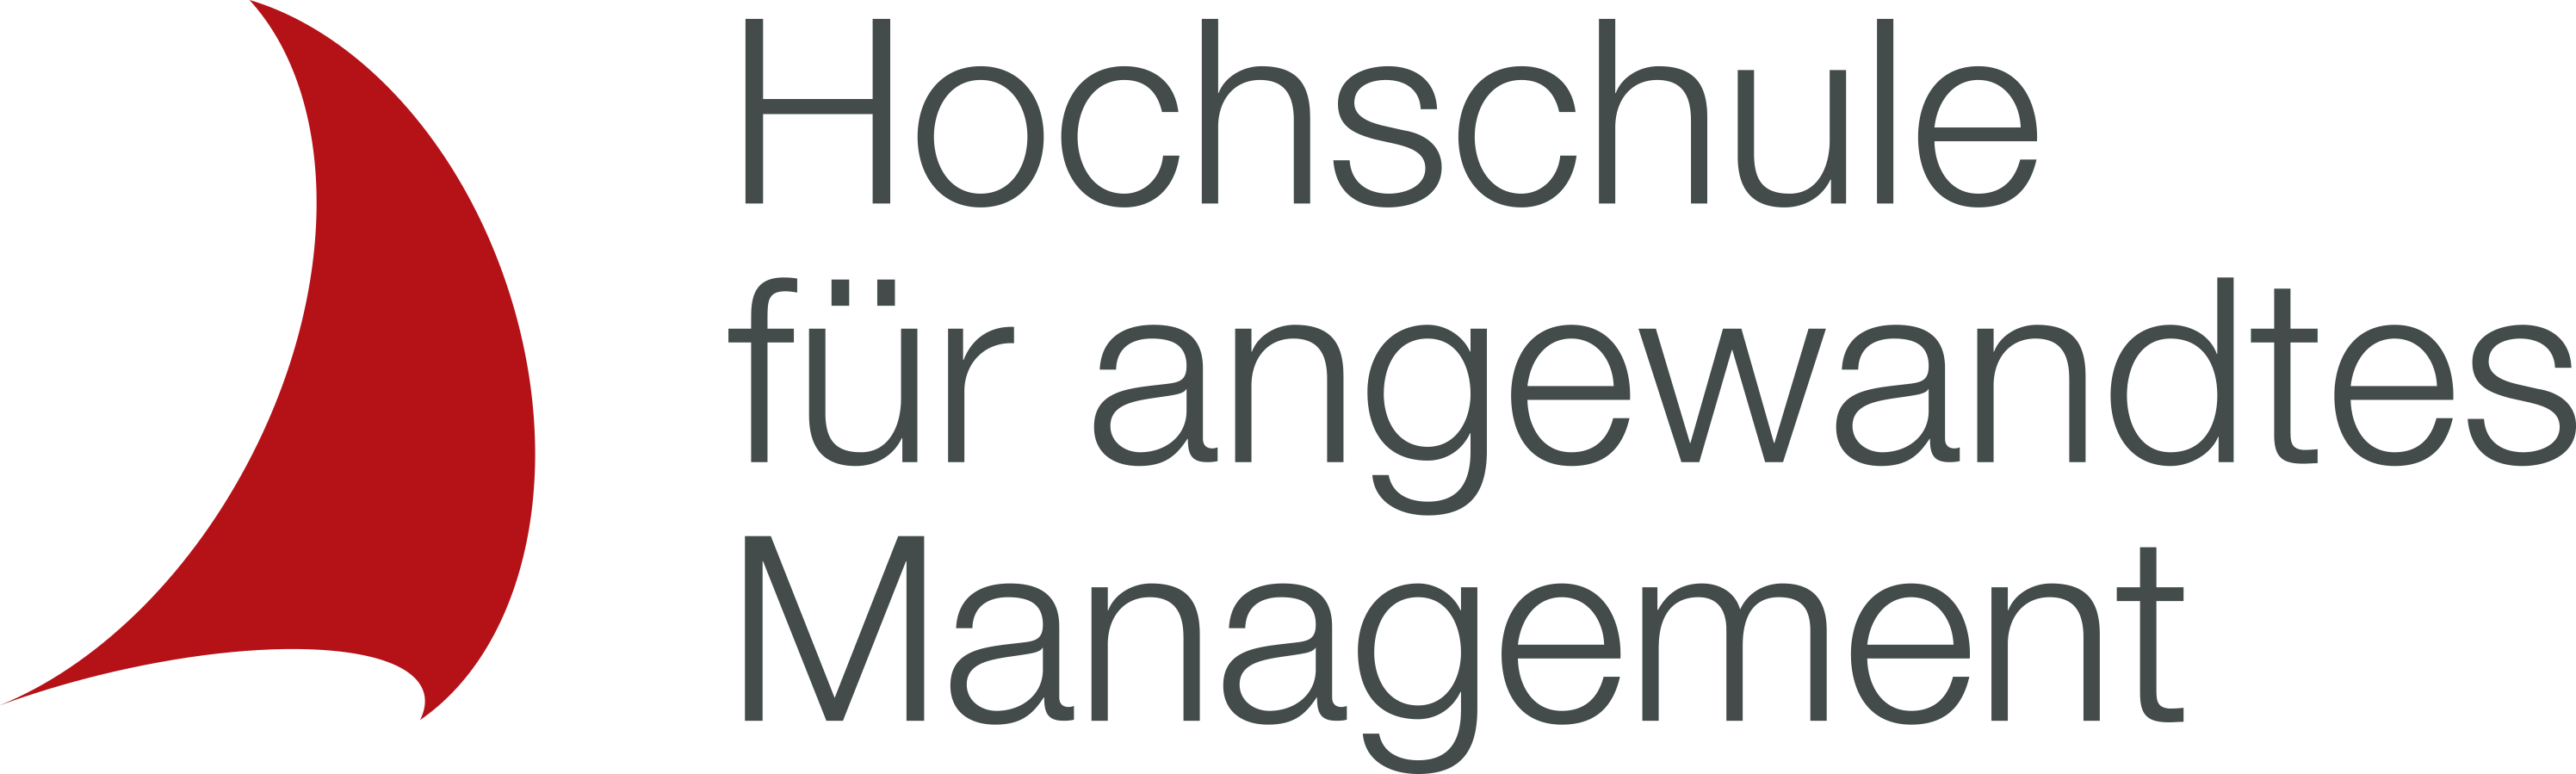 Hochschule für angewandtes Managment GmbH